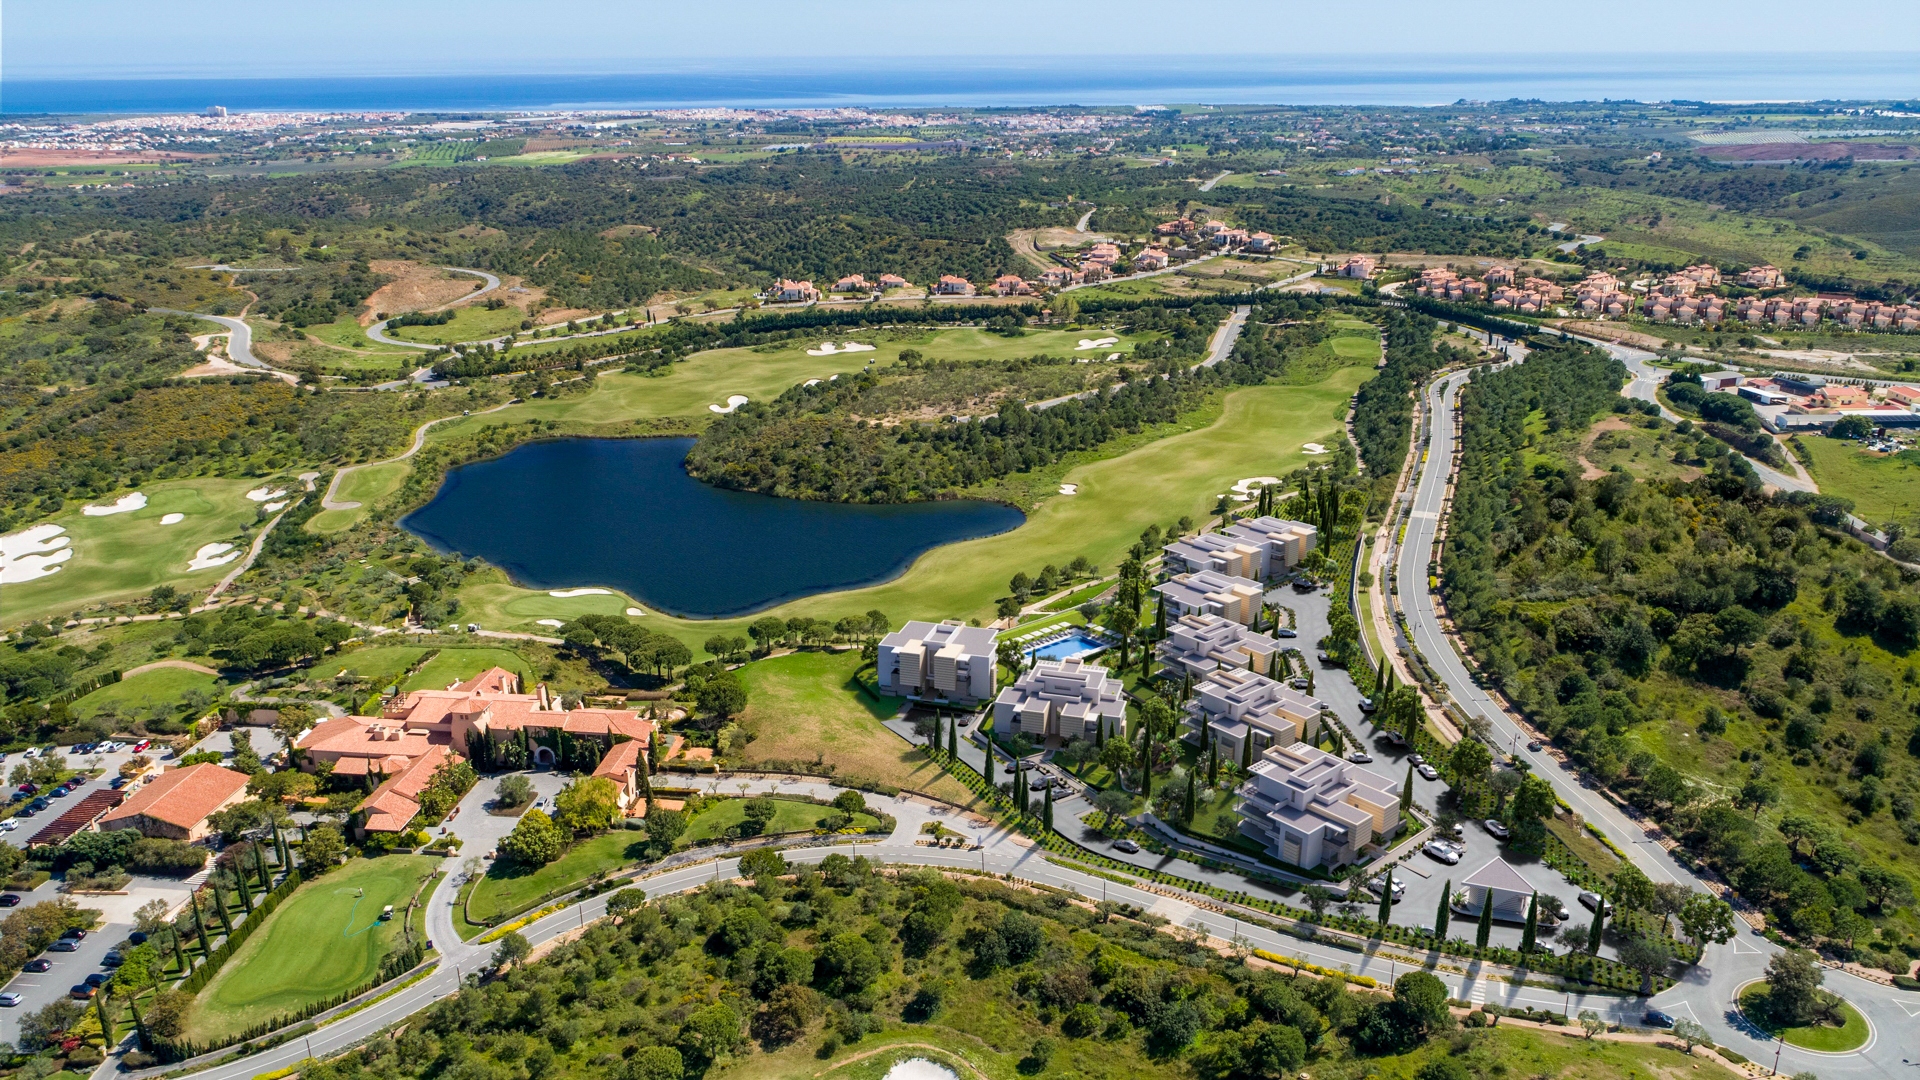 Luxuriöse 3 SZ Penthouse Maisonette Apartments mit Meerblick auf einem der Besten Golfplätze Europas, Ost Algarve | TV1835 Exklusive, luxuriöse Penthouse Apartments mit atemberaubendem Blick über den See und den Golfplatz bis hin zum Meer. In der Nähe des Clubhausesdes Monte Rei Golf & Country Club mit wunderschön angelegten Gärten und großem Gemeinschaftspool gelegen.